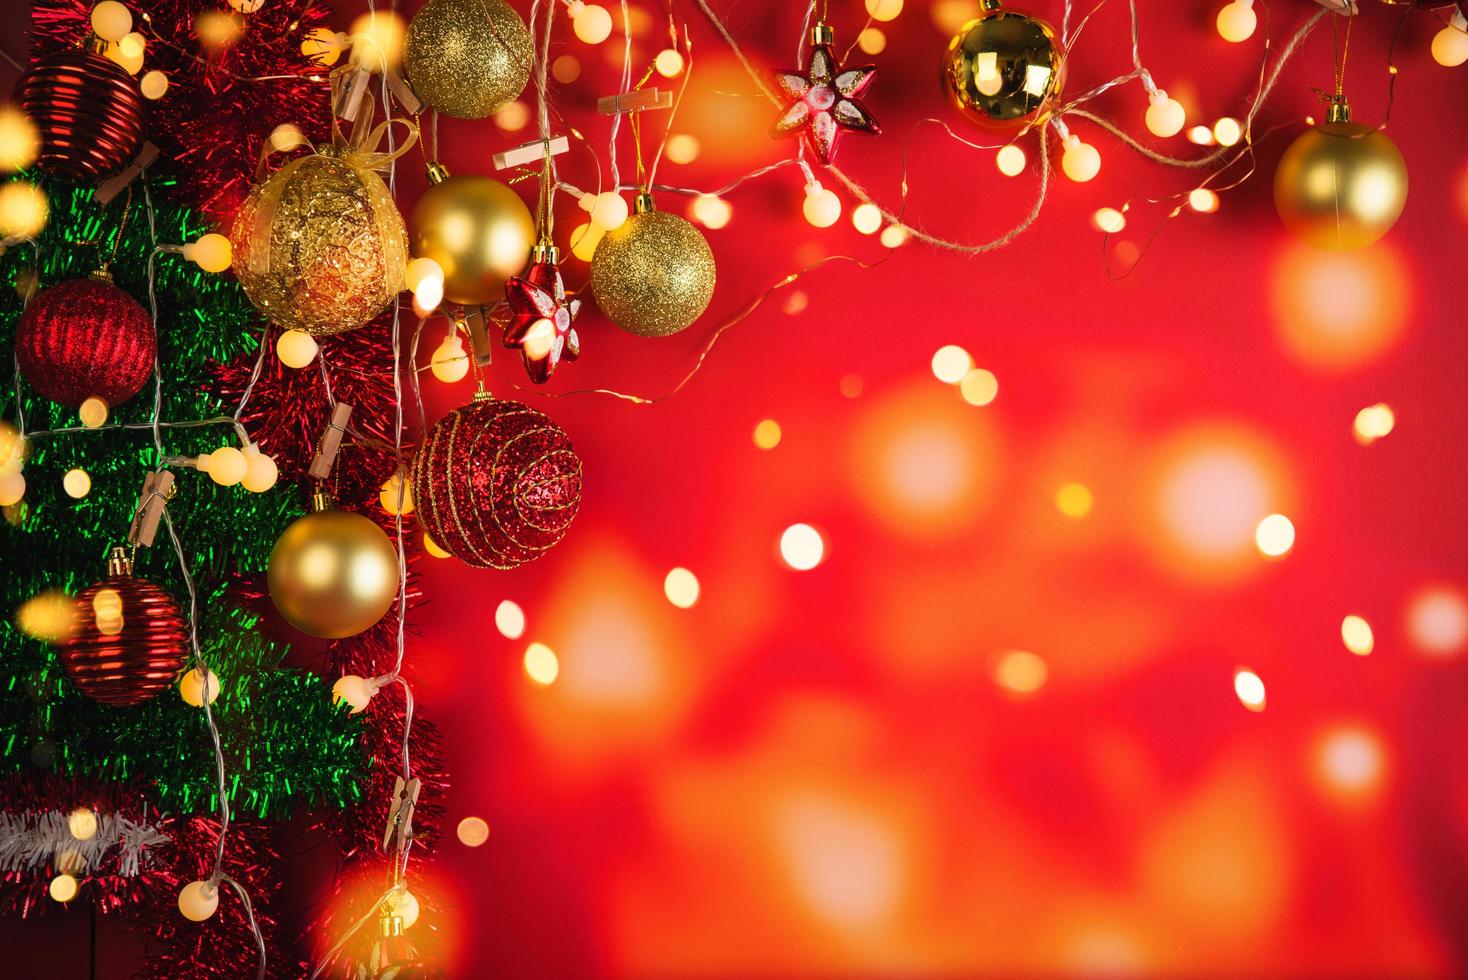 boules et ornements de décoration de noël sur fond abstrait bokeh avec espace de copie. carte de voeux de fond de vacances pour noël et nouvel an. joyeux Noël photo